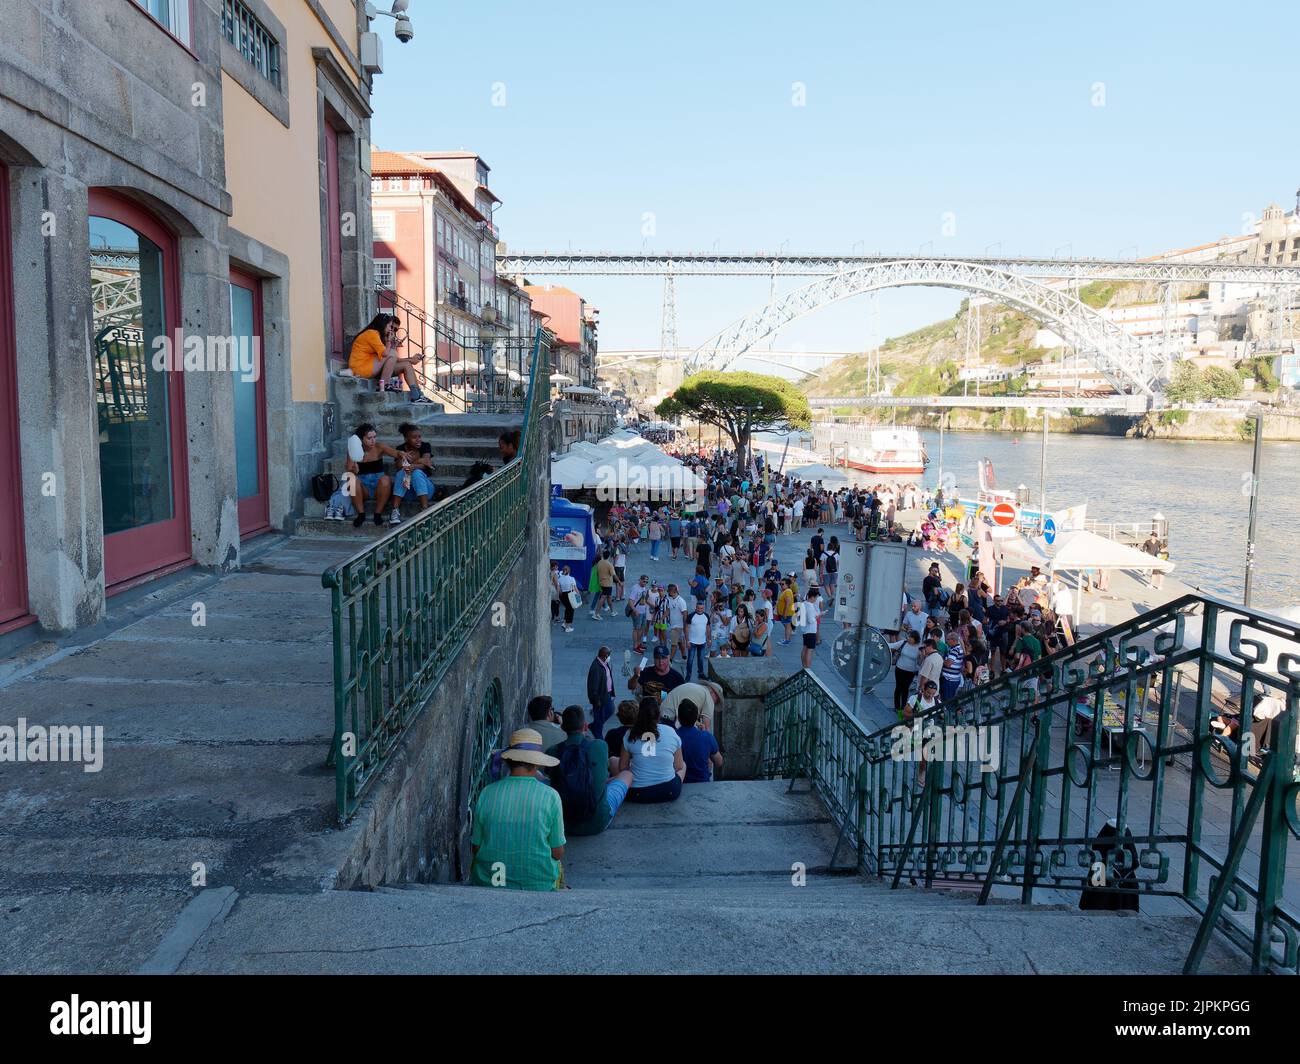 Gente relajándose en las escaleras del distrito Ribeira, también conocido como distrito ribereño de Porto, Portugal, con el río Duoro a la derecha y el puente Luis I detrás. Foto de stock